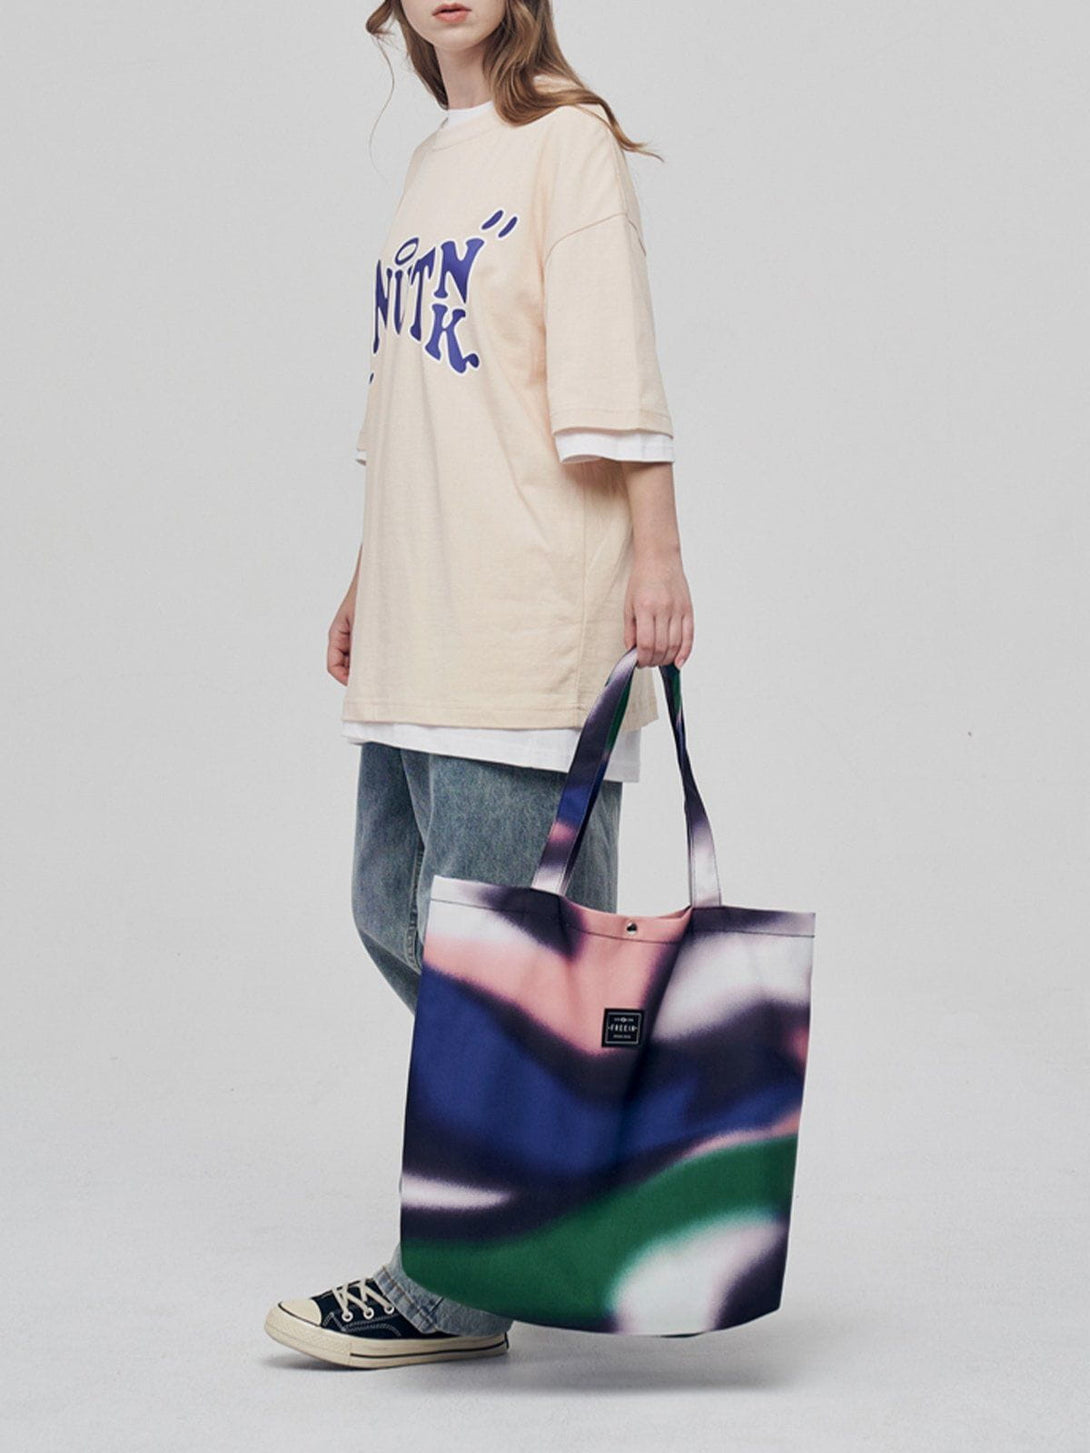 Levefly - Abstraction Contrast Canvas Shoulder Bag Bag - Streetwear Fashion - levefly.com